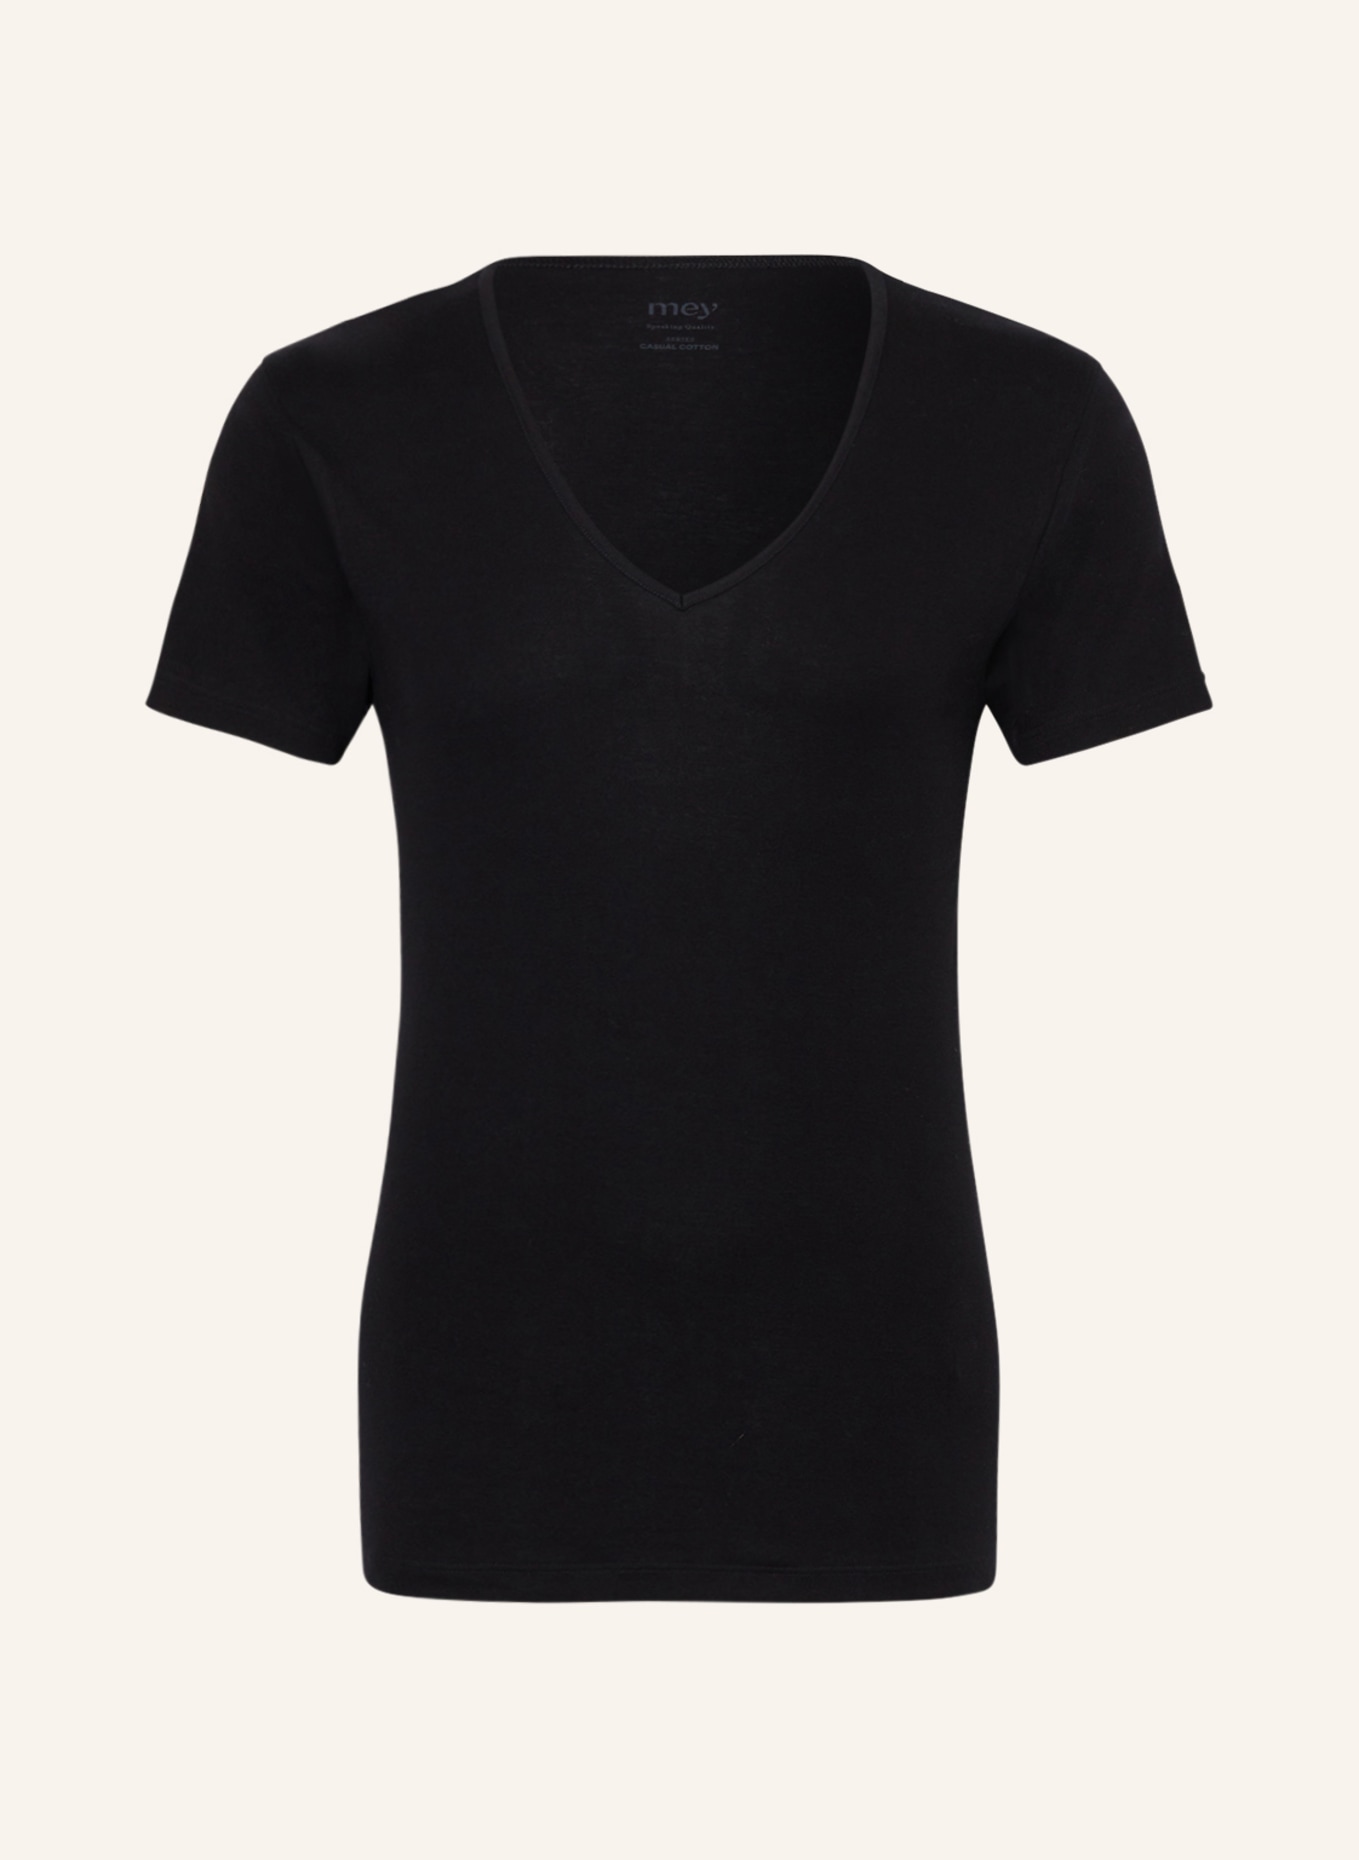 mey V-neck shirt series SENSUAL COTTON, Color: BLACK (Image 1)